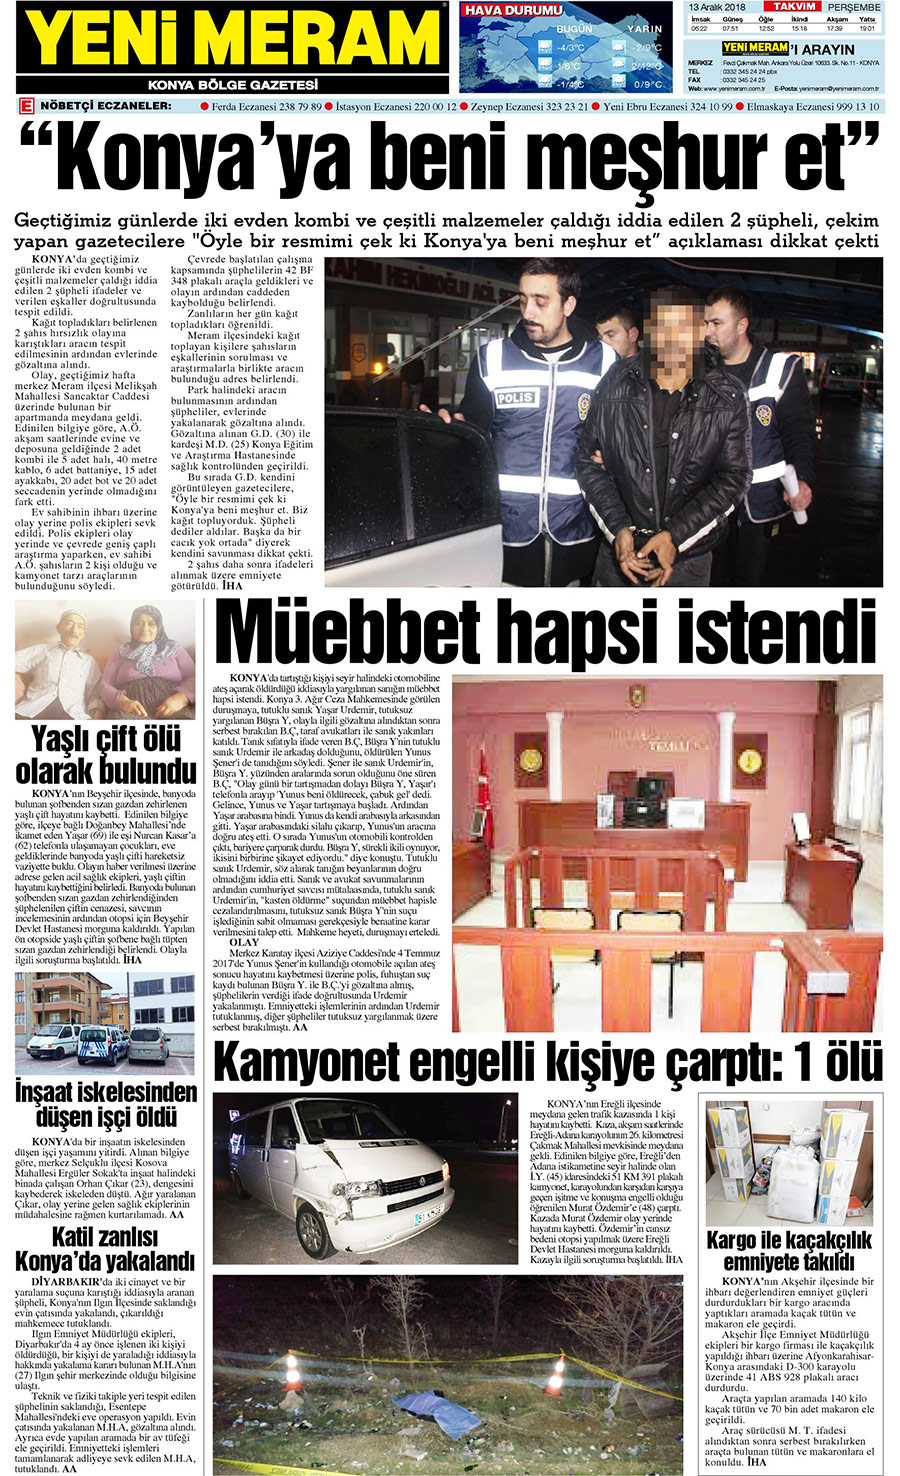 13 Aralık 2018 Yeni Meram Gazetesi